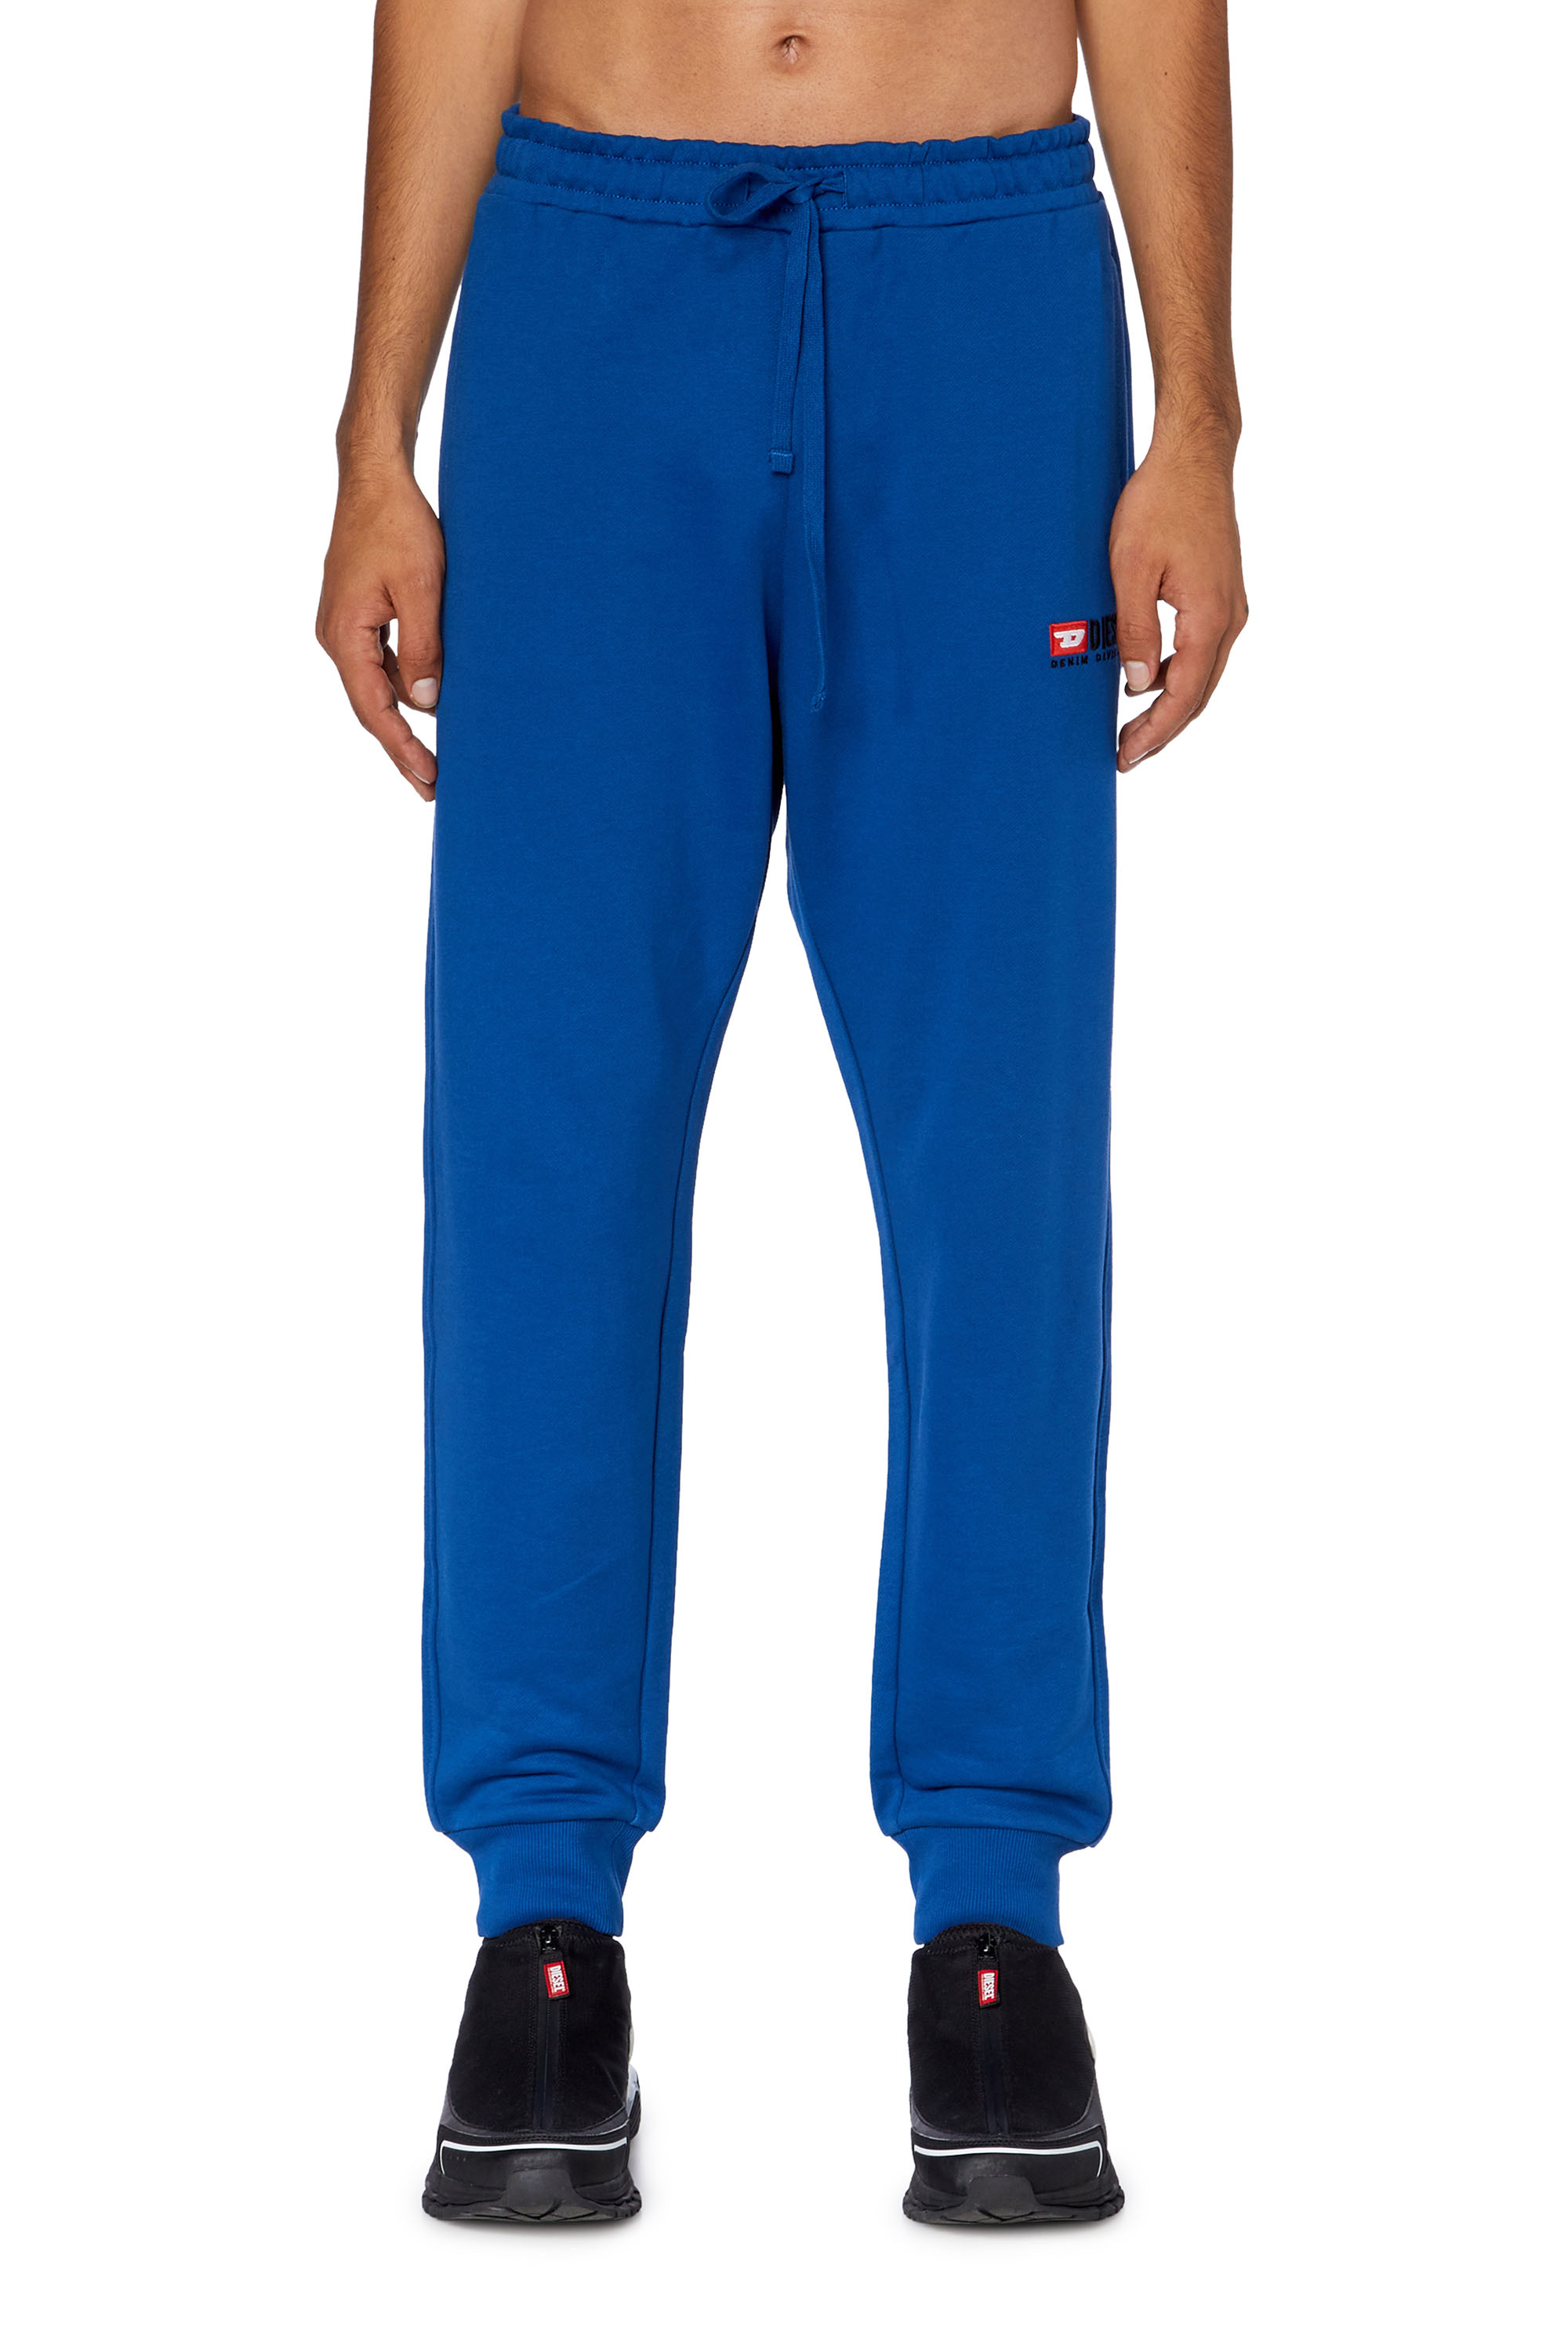 Diesel - Pantalones deportivos con logotipo bordado - Pantalones - Hombre - Azul marino